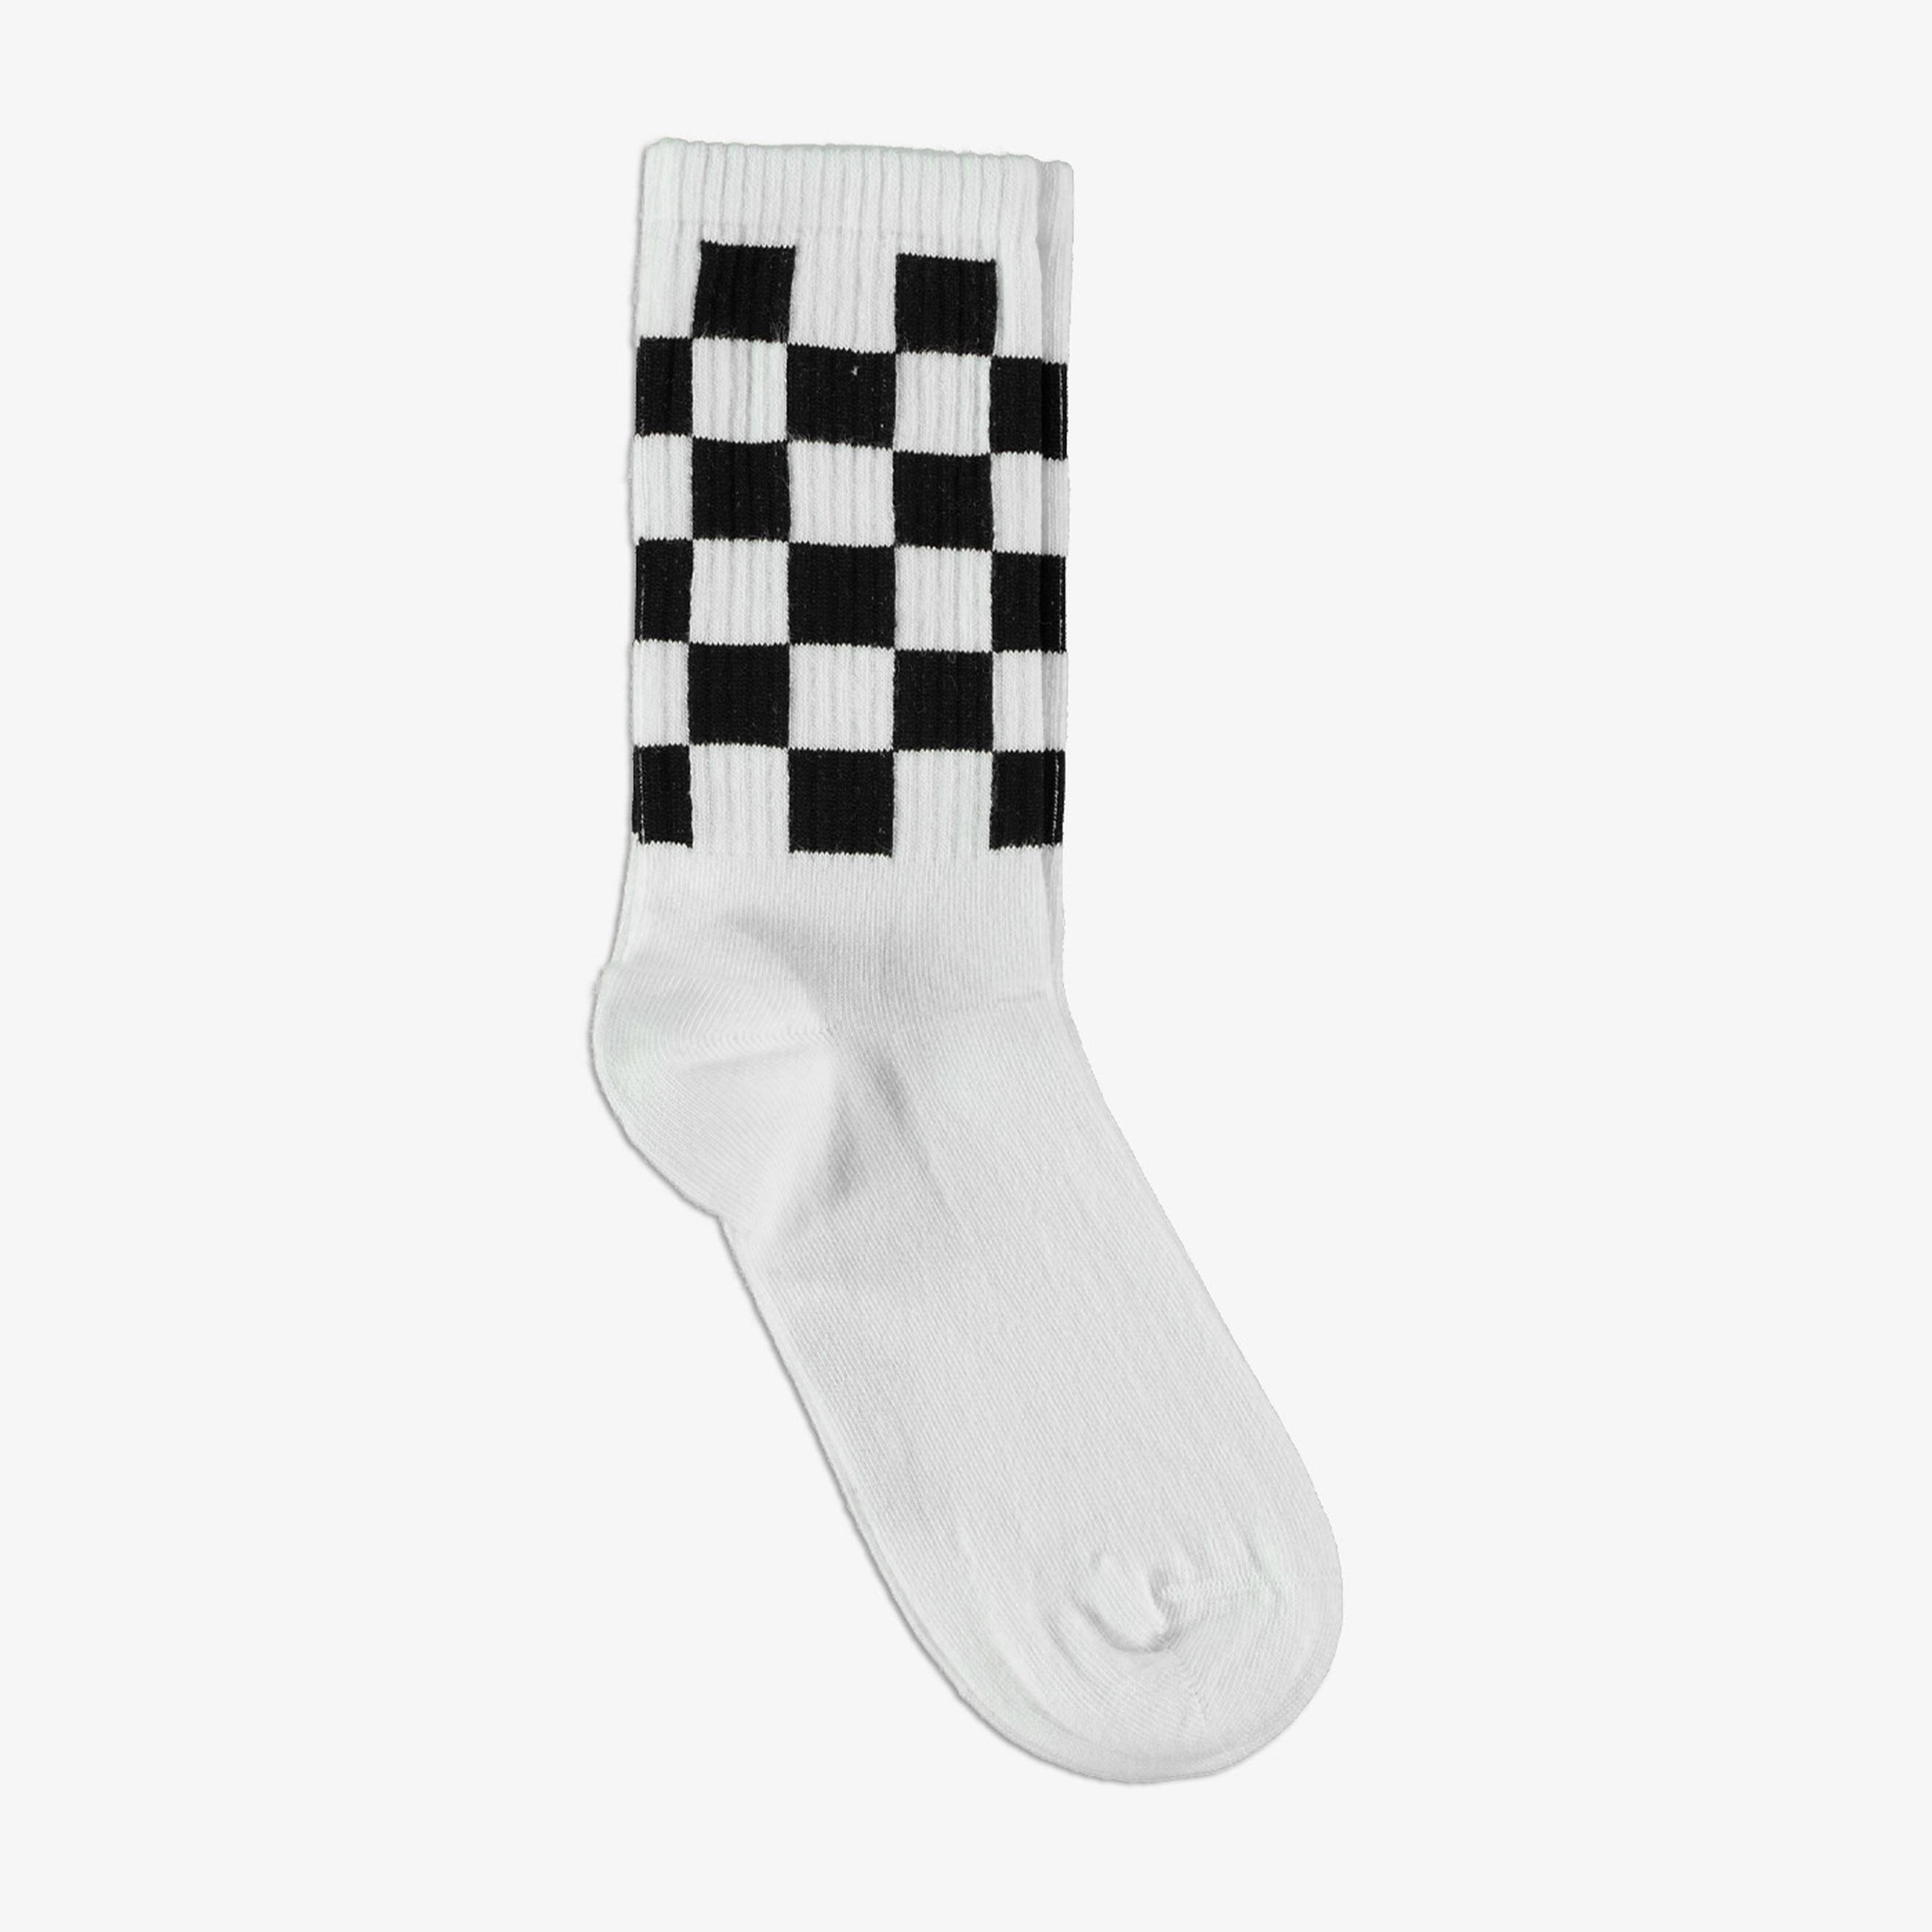 Superstep Siyah-Beyaz Çorap